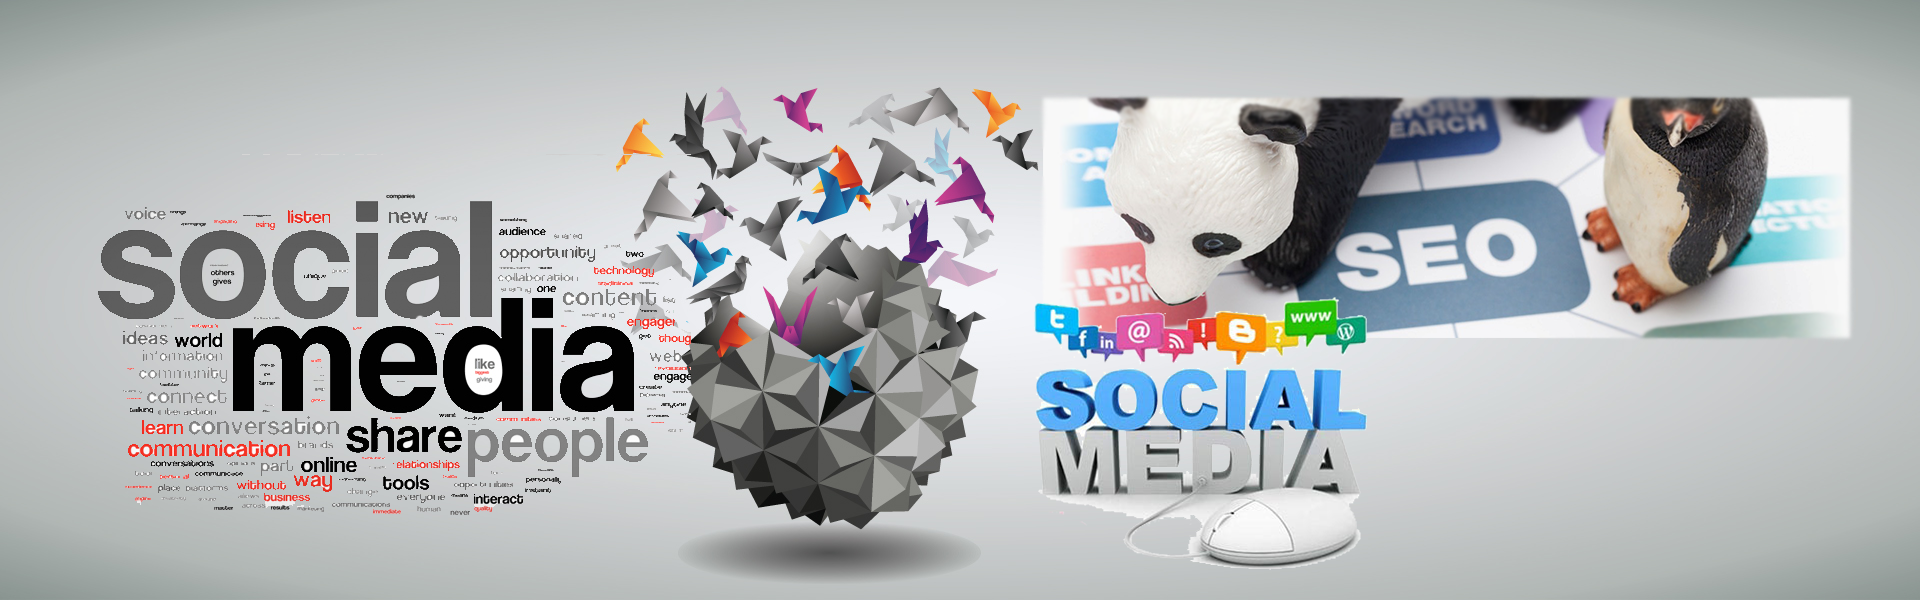 social-media2